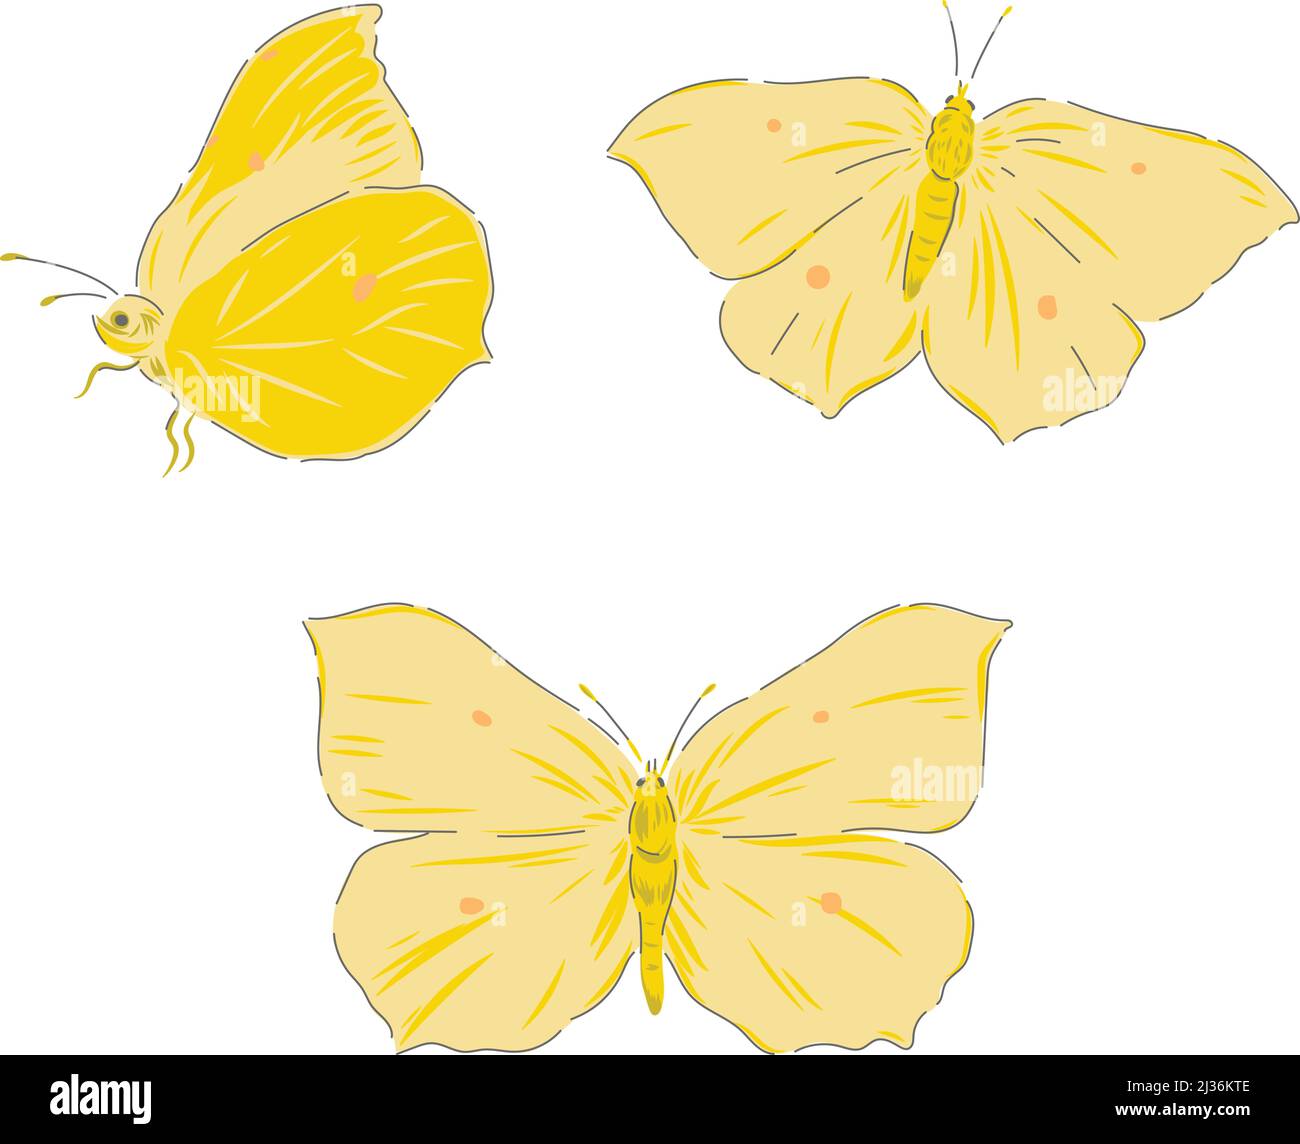 Brimstone farfalla insetto disegno a mano vettore illustrazione set isolato su bianco. Vintage Curiosity cabinet stampa estetica. Illustrazione Vettoriale